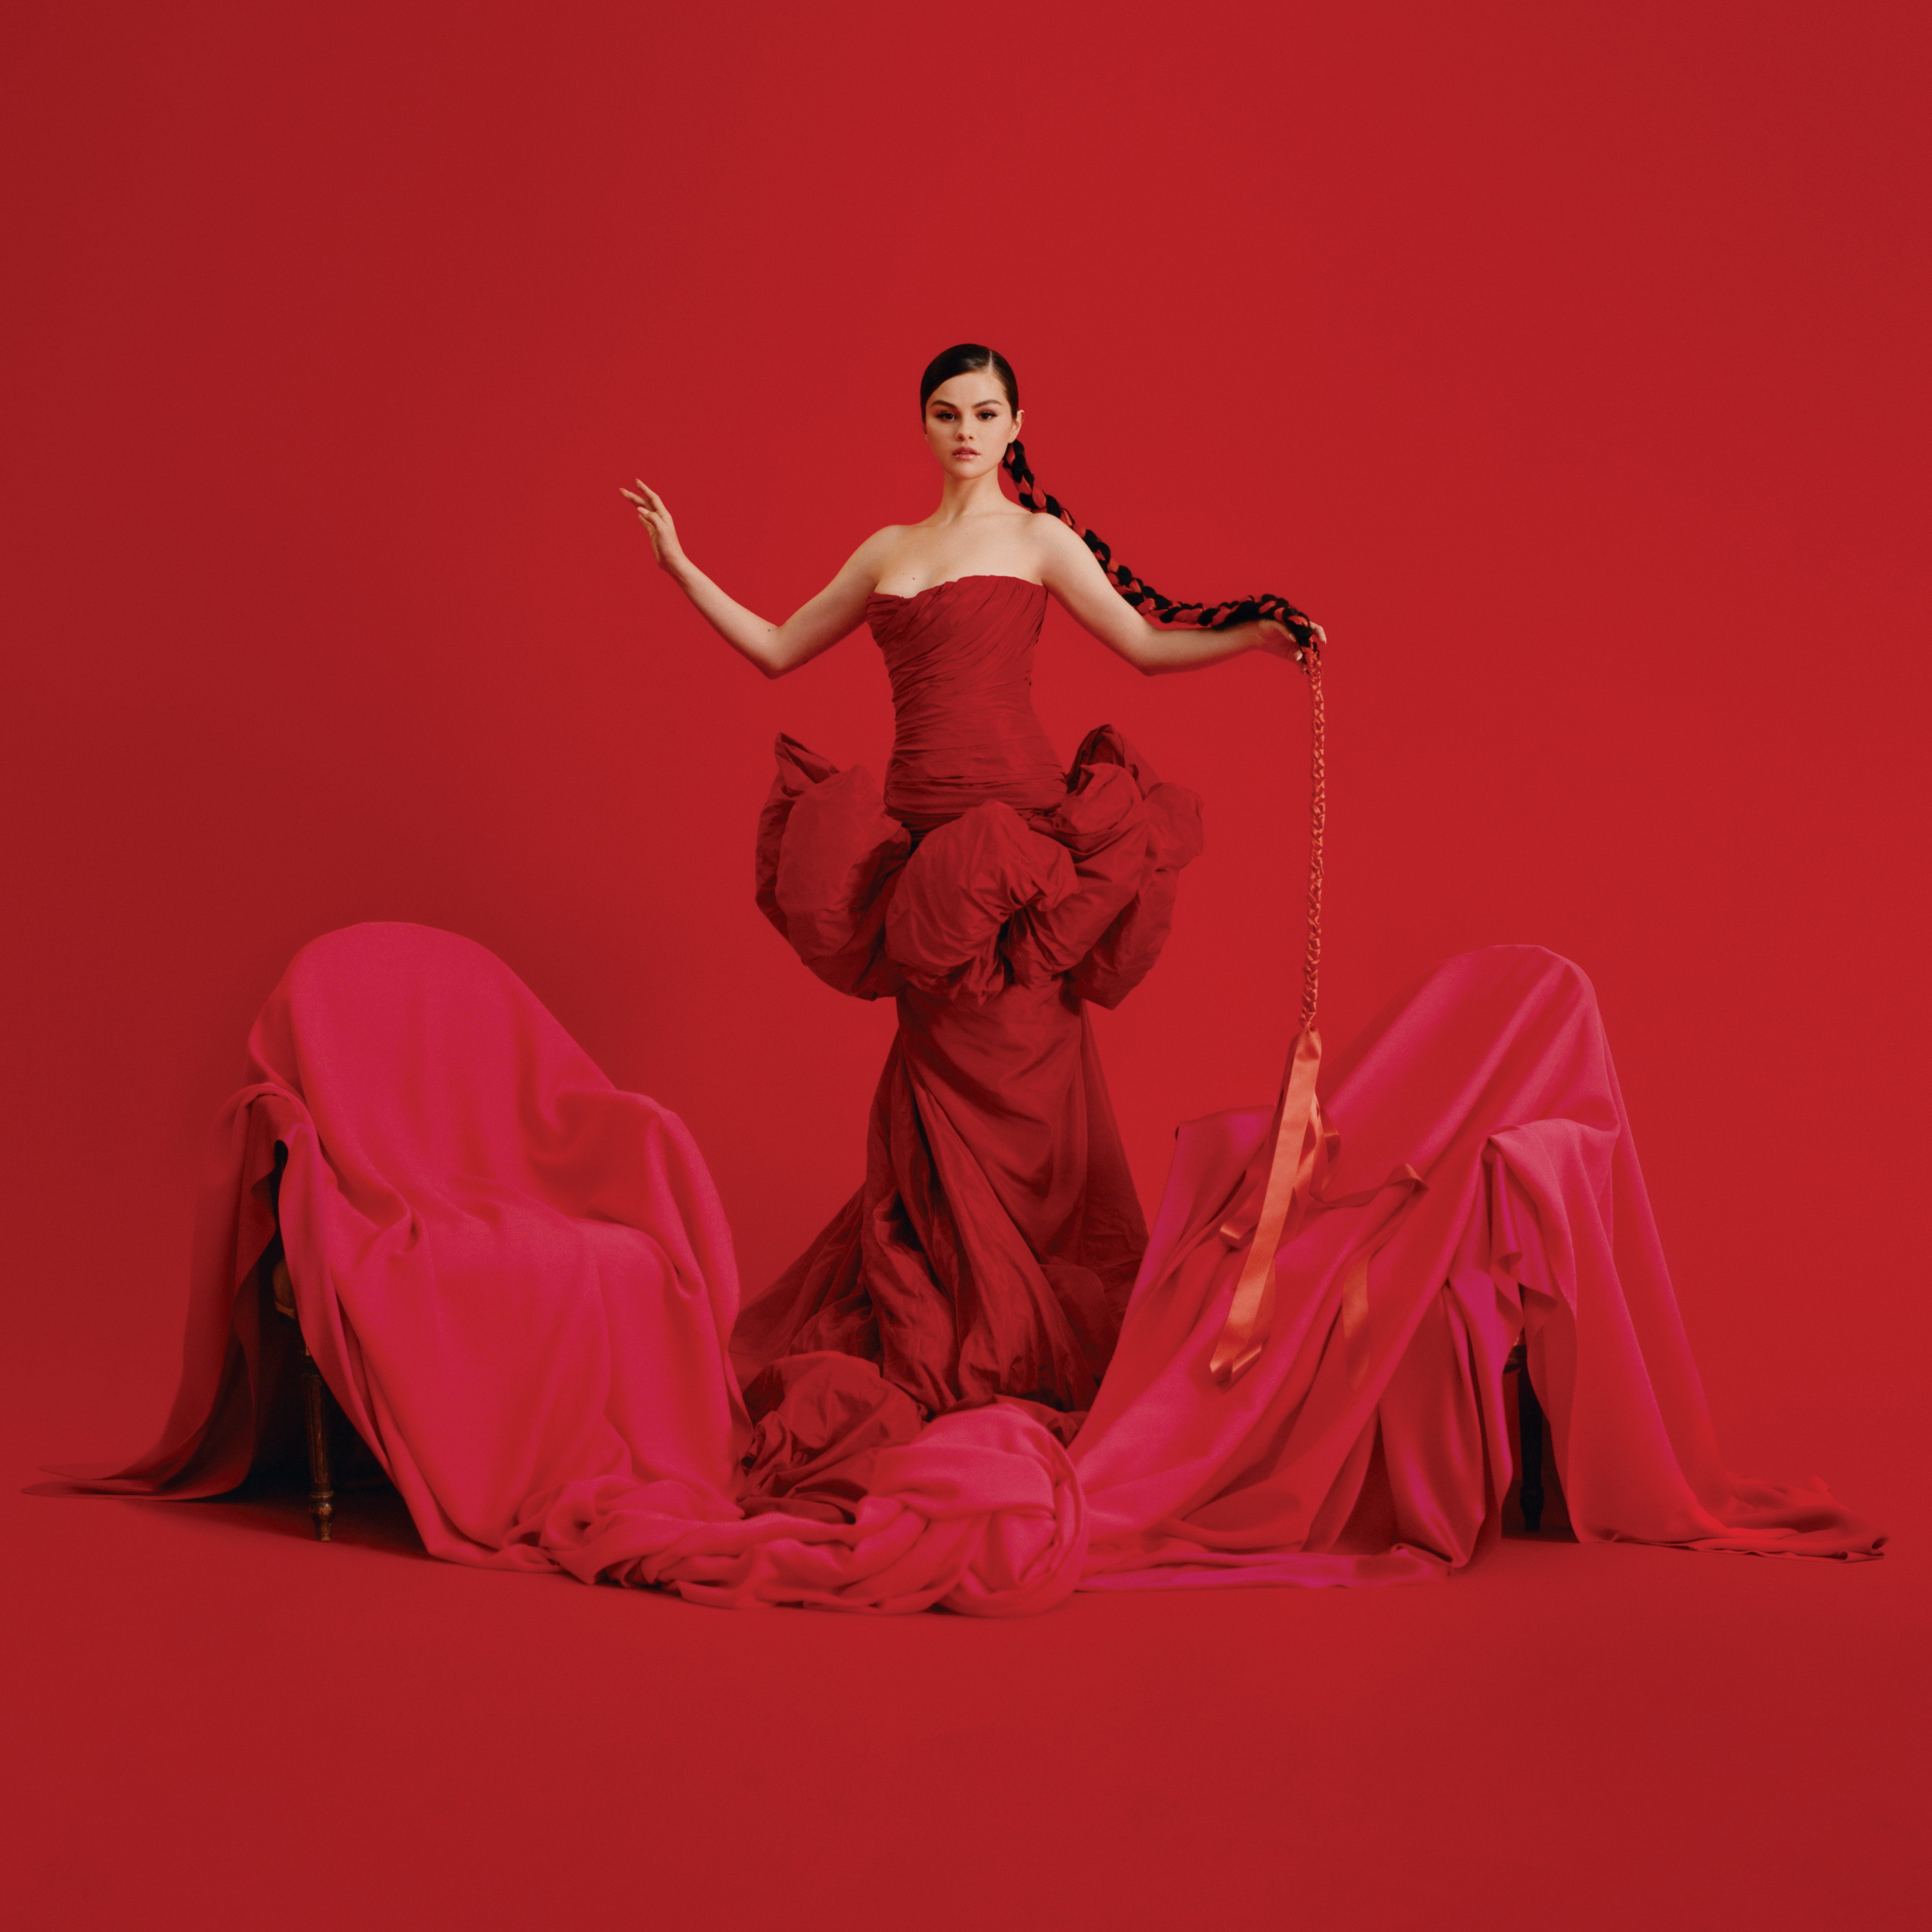 Selena Gomez, uma mulher branca de cabelo castanho, está em pé, usando um vestido vermelho com babados na cintura. Ela está com uma trança no cabelo. Essa trança está com uma fita vermelha, que vai até as pontas do cabelo e com um caimento de fita abaixo. No chão, existem duas cadeiras, cobertas por um pano vermelho. O fundo da imagem também é todo vermelho.